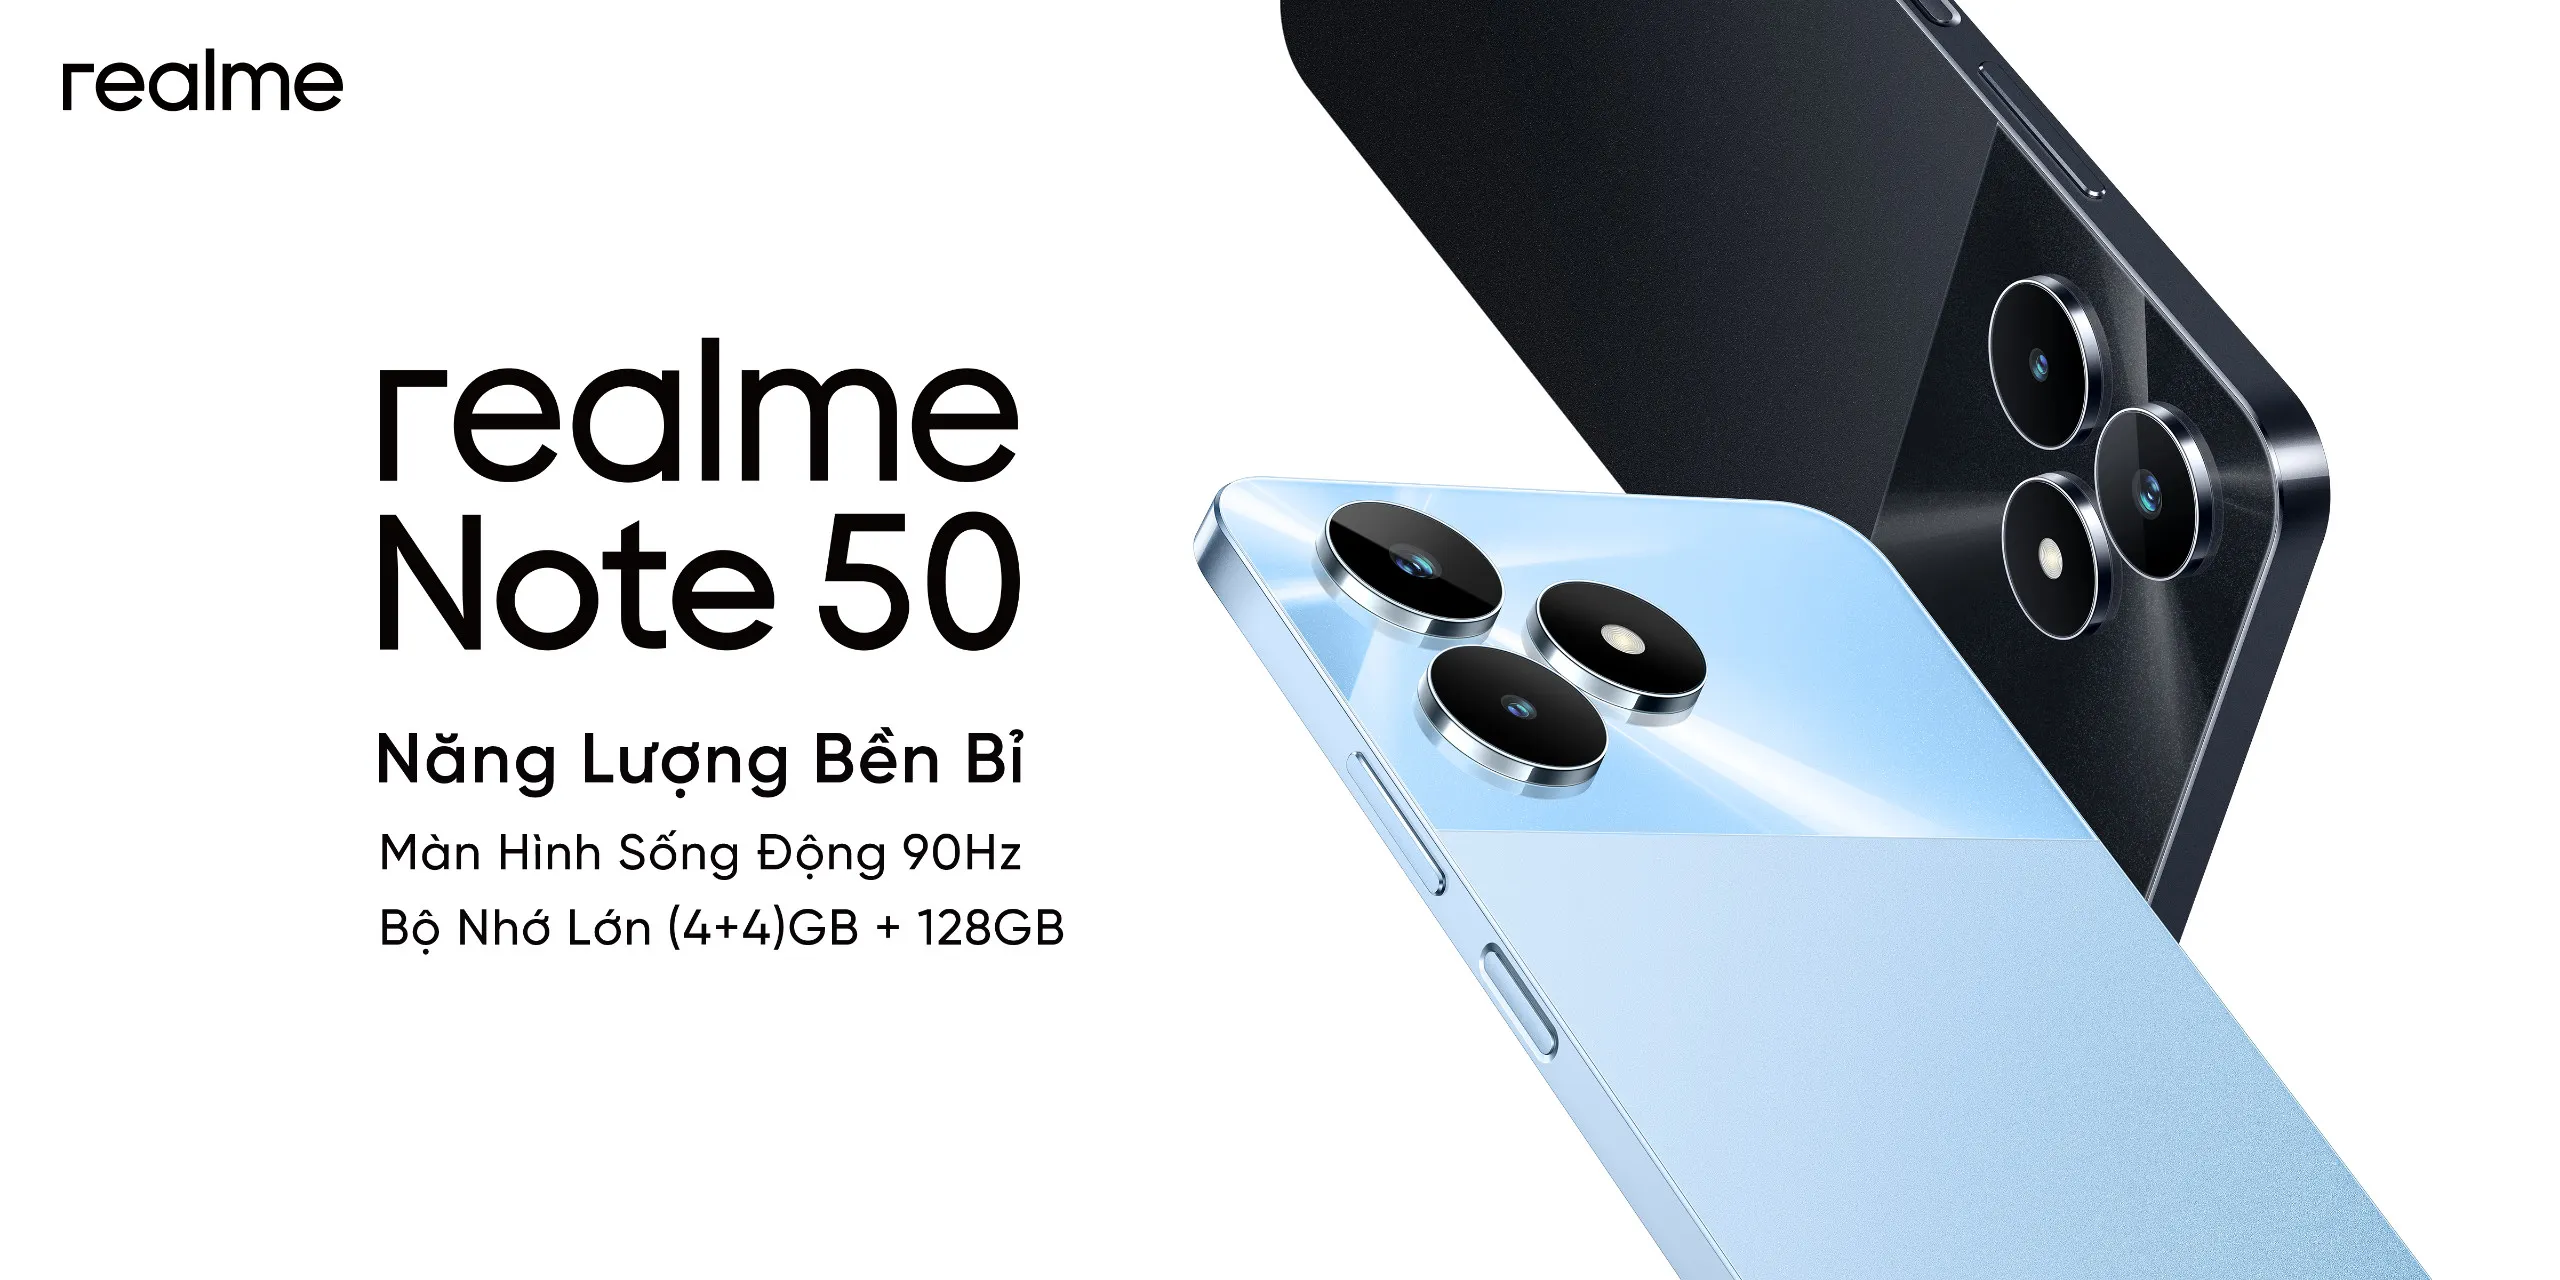 realme Note 50: Tân binh dòng Note giá dưới 3 triệu đồng ra mắt tại Việt Nam